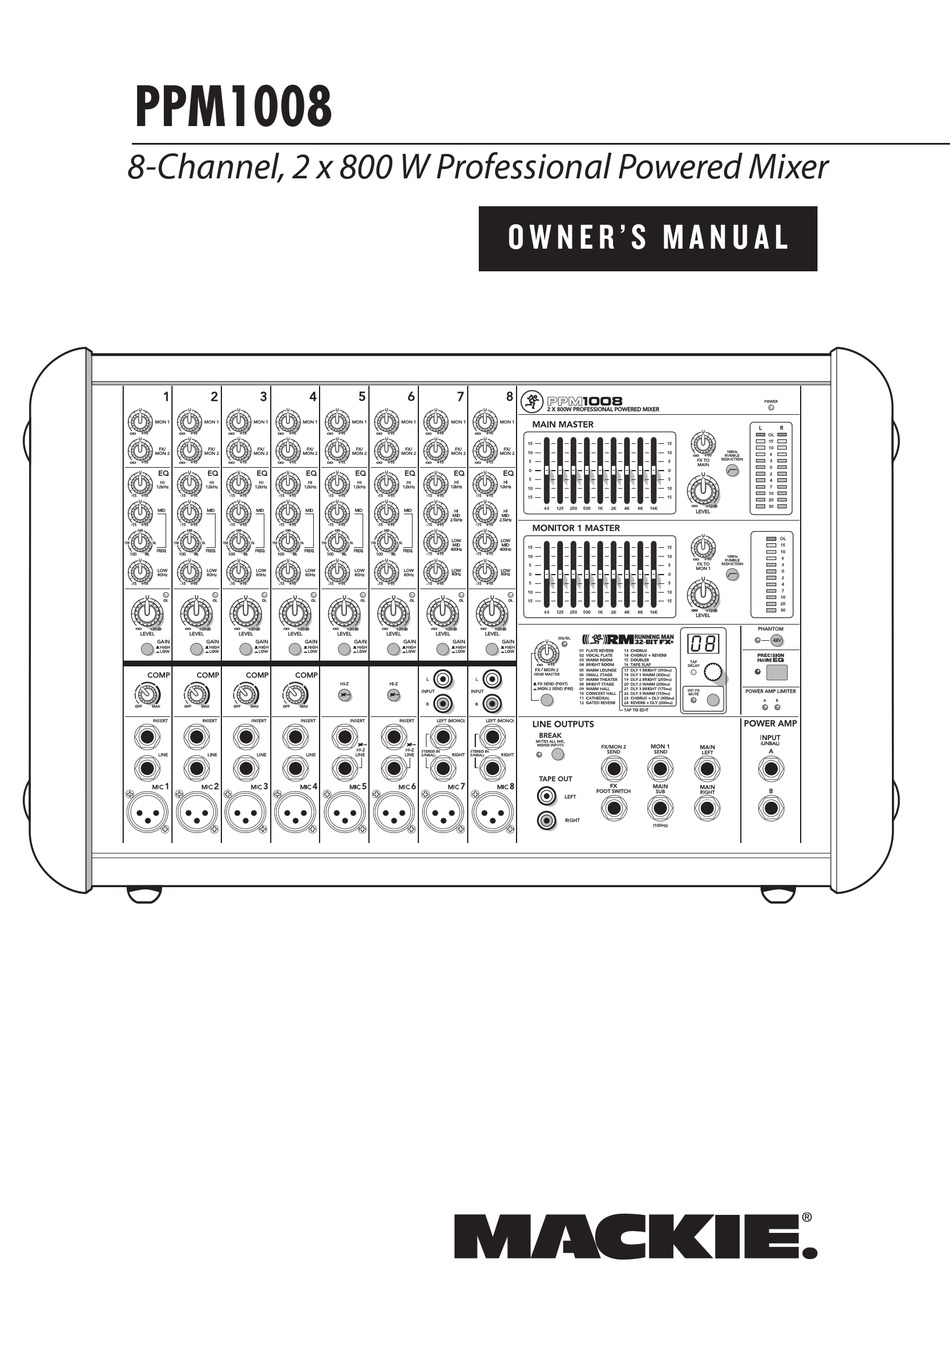 MACKIE PPM1008 MUSIC MIXER OWNER'S MANUAL | ManualsLib